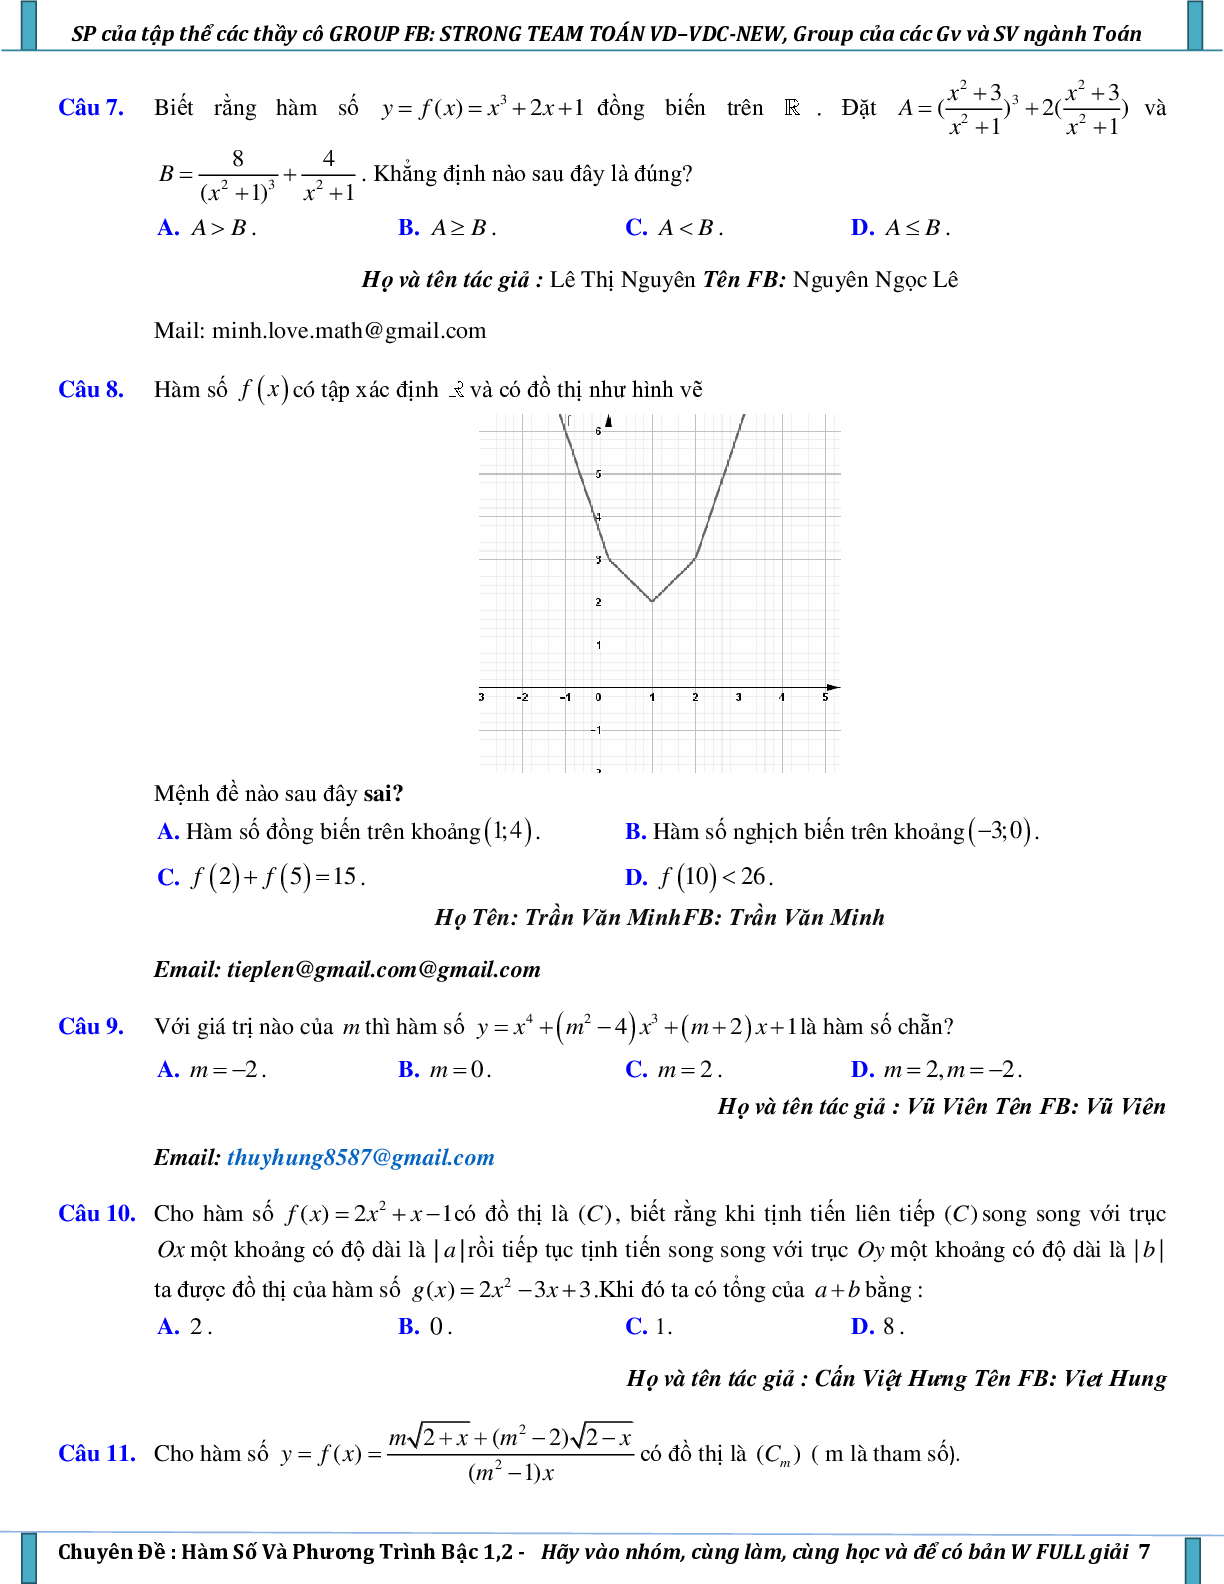 Vận dụng – vận dụng cao hàm số và phương trình bậc nhất, bậc hai (trang 7)